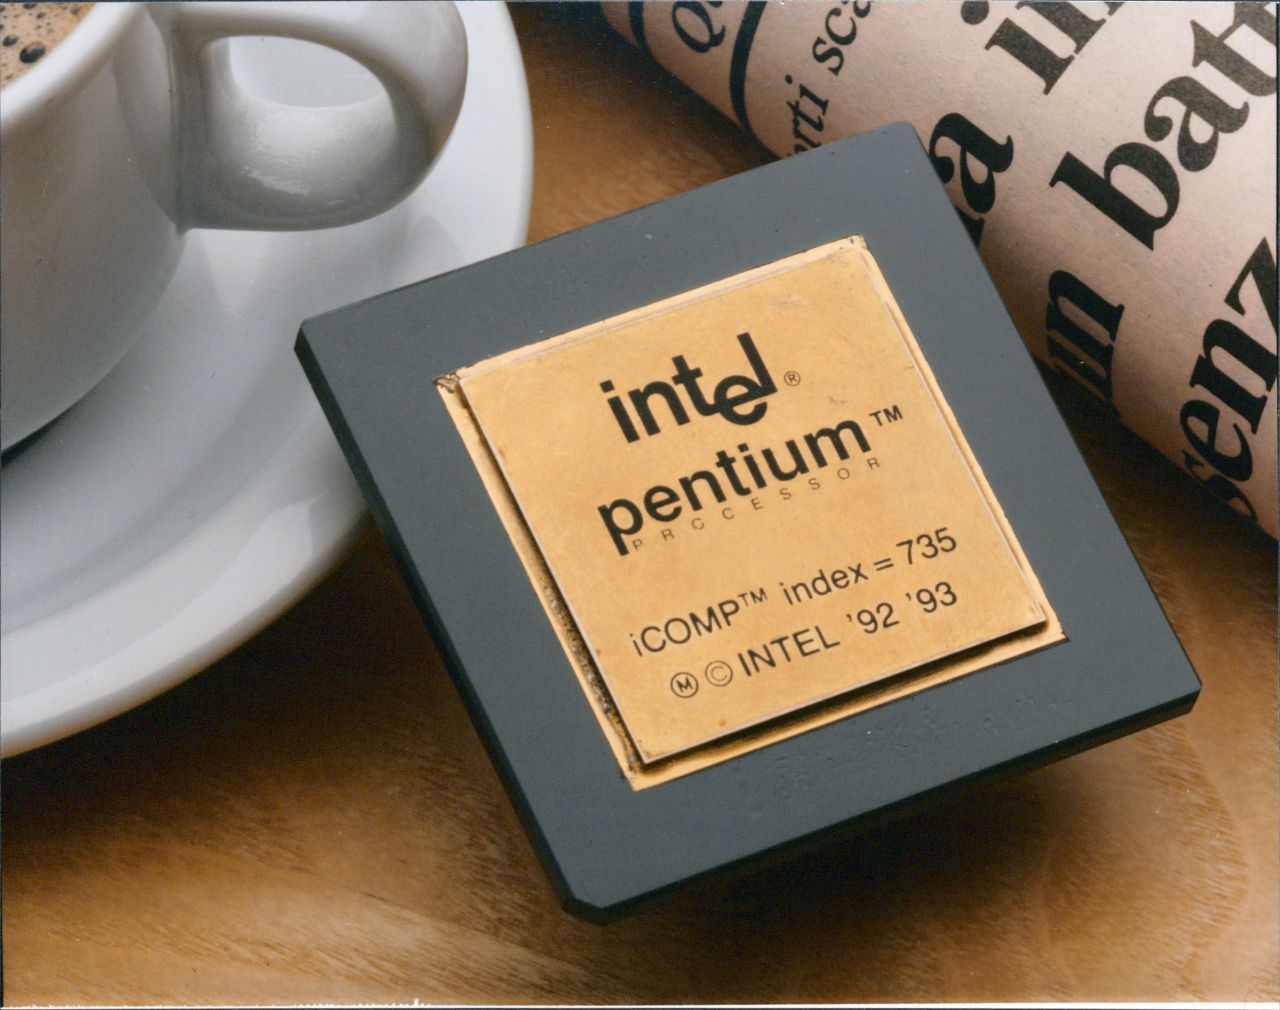 Mitte der 1990er Jahre kursierte unter Informatikern dieser Witz: "Wie viele Spieler hat die Fußballmannschaft von Intel?" - "10,999997". Der Grund: Die Intel-Prozessoren von 1994 verrechneten sich bei bestimmten Gleichungen. 475 Millionen Dollar kostete Intel dieser Fehler.